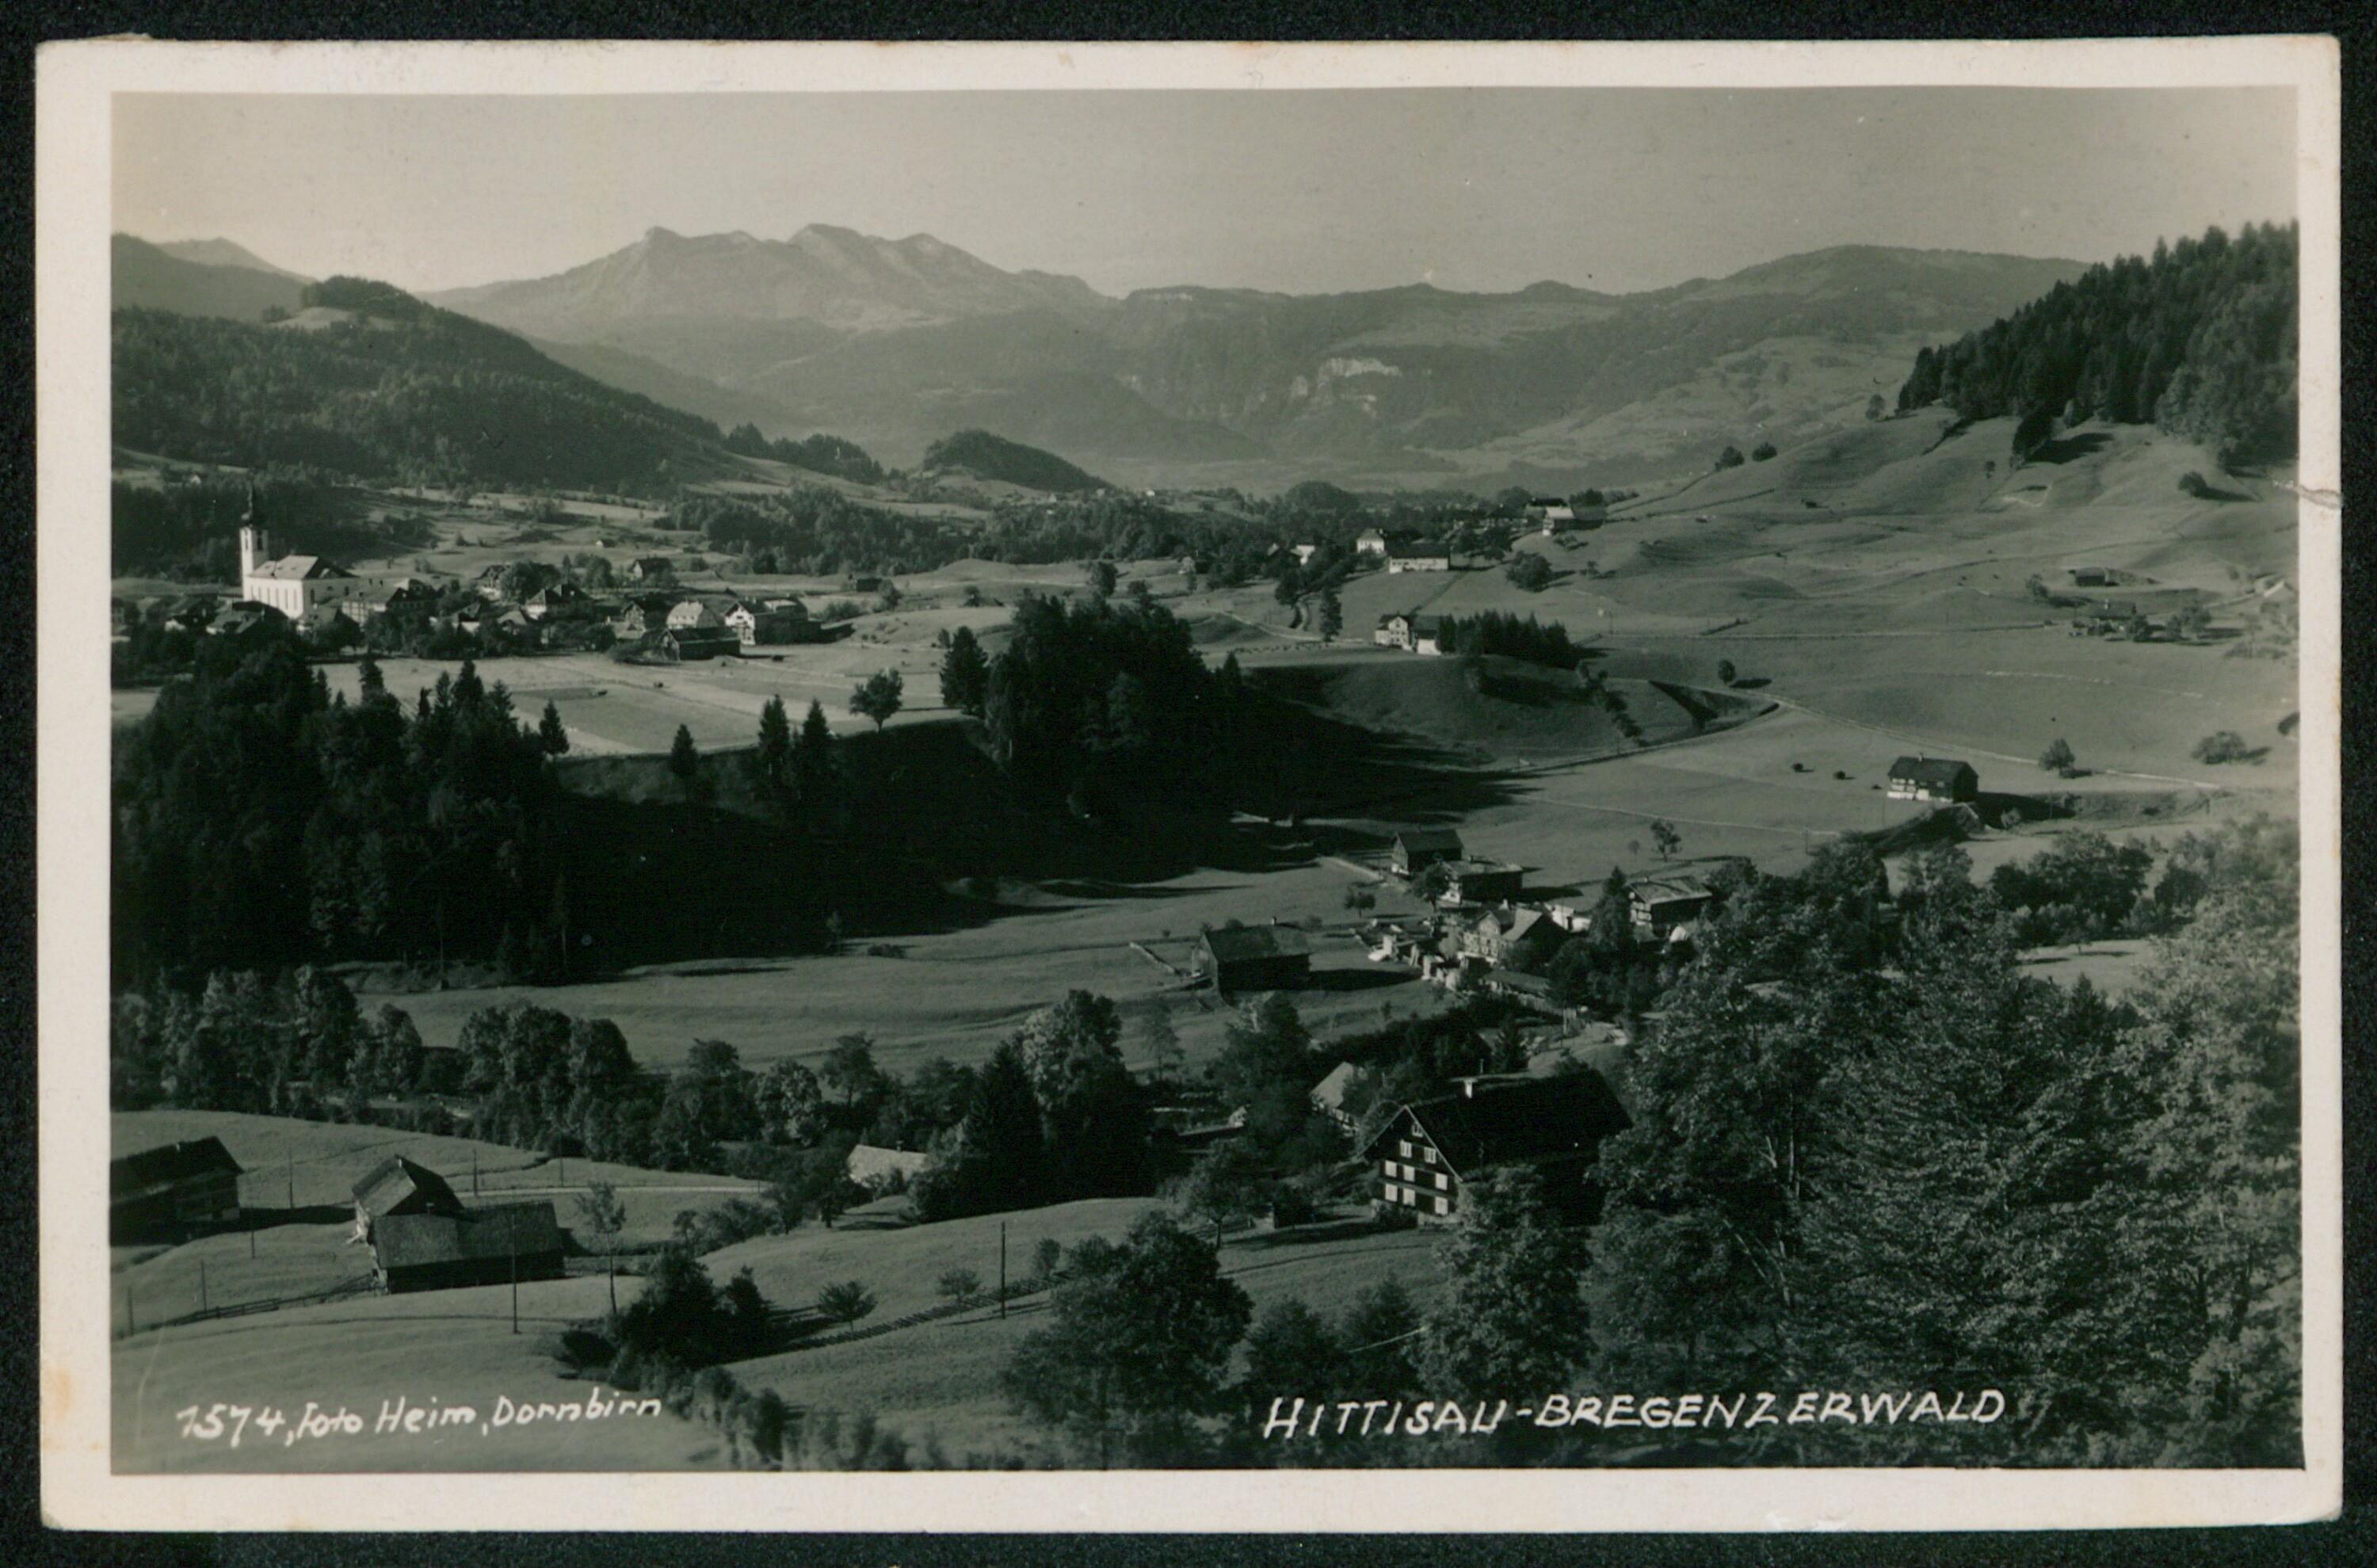 Hittisau-Bregenzerwald></div>


    <hr>
    <div class=